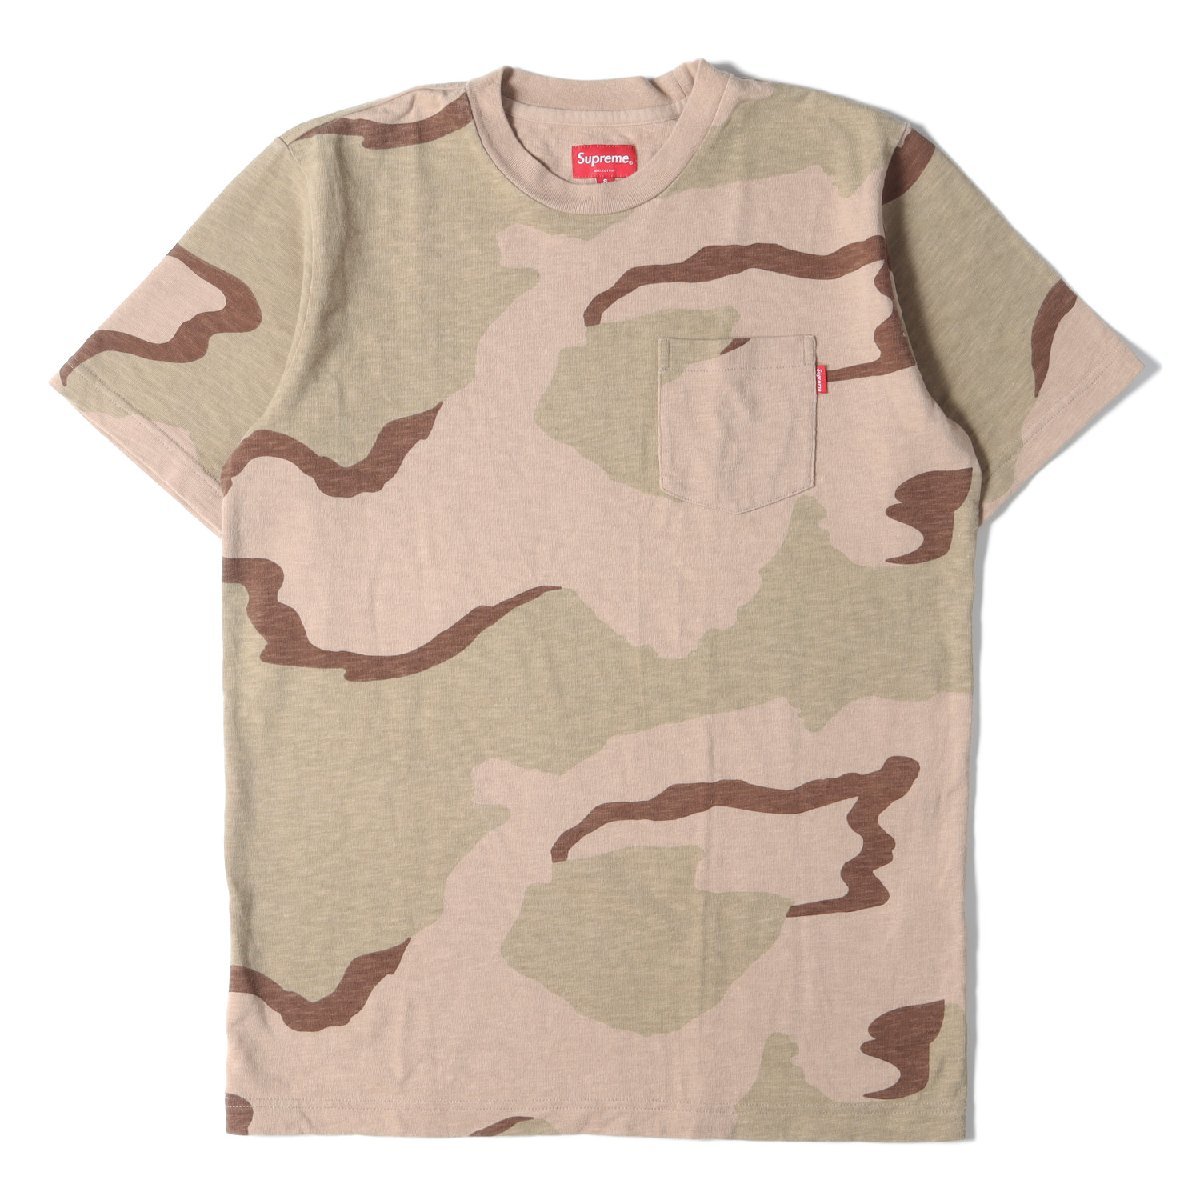 Supreme シュプリーム Tシャツ サイズ:S デザートカモ柄 ポケット ヘビー クルーネック 半袖 TシャツS/S Pocket Tee 16SS 迷彩 ブランド